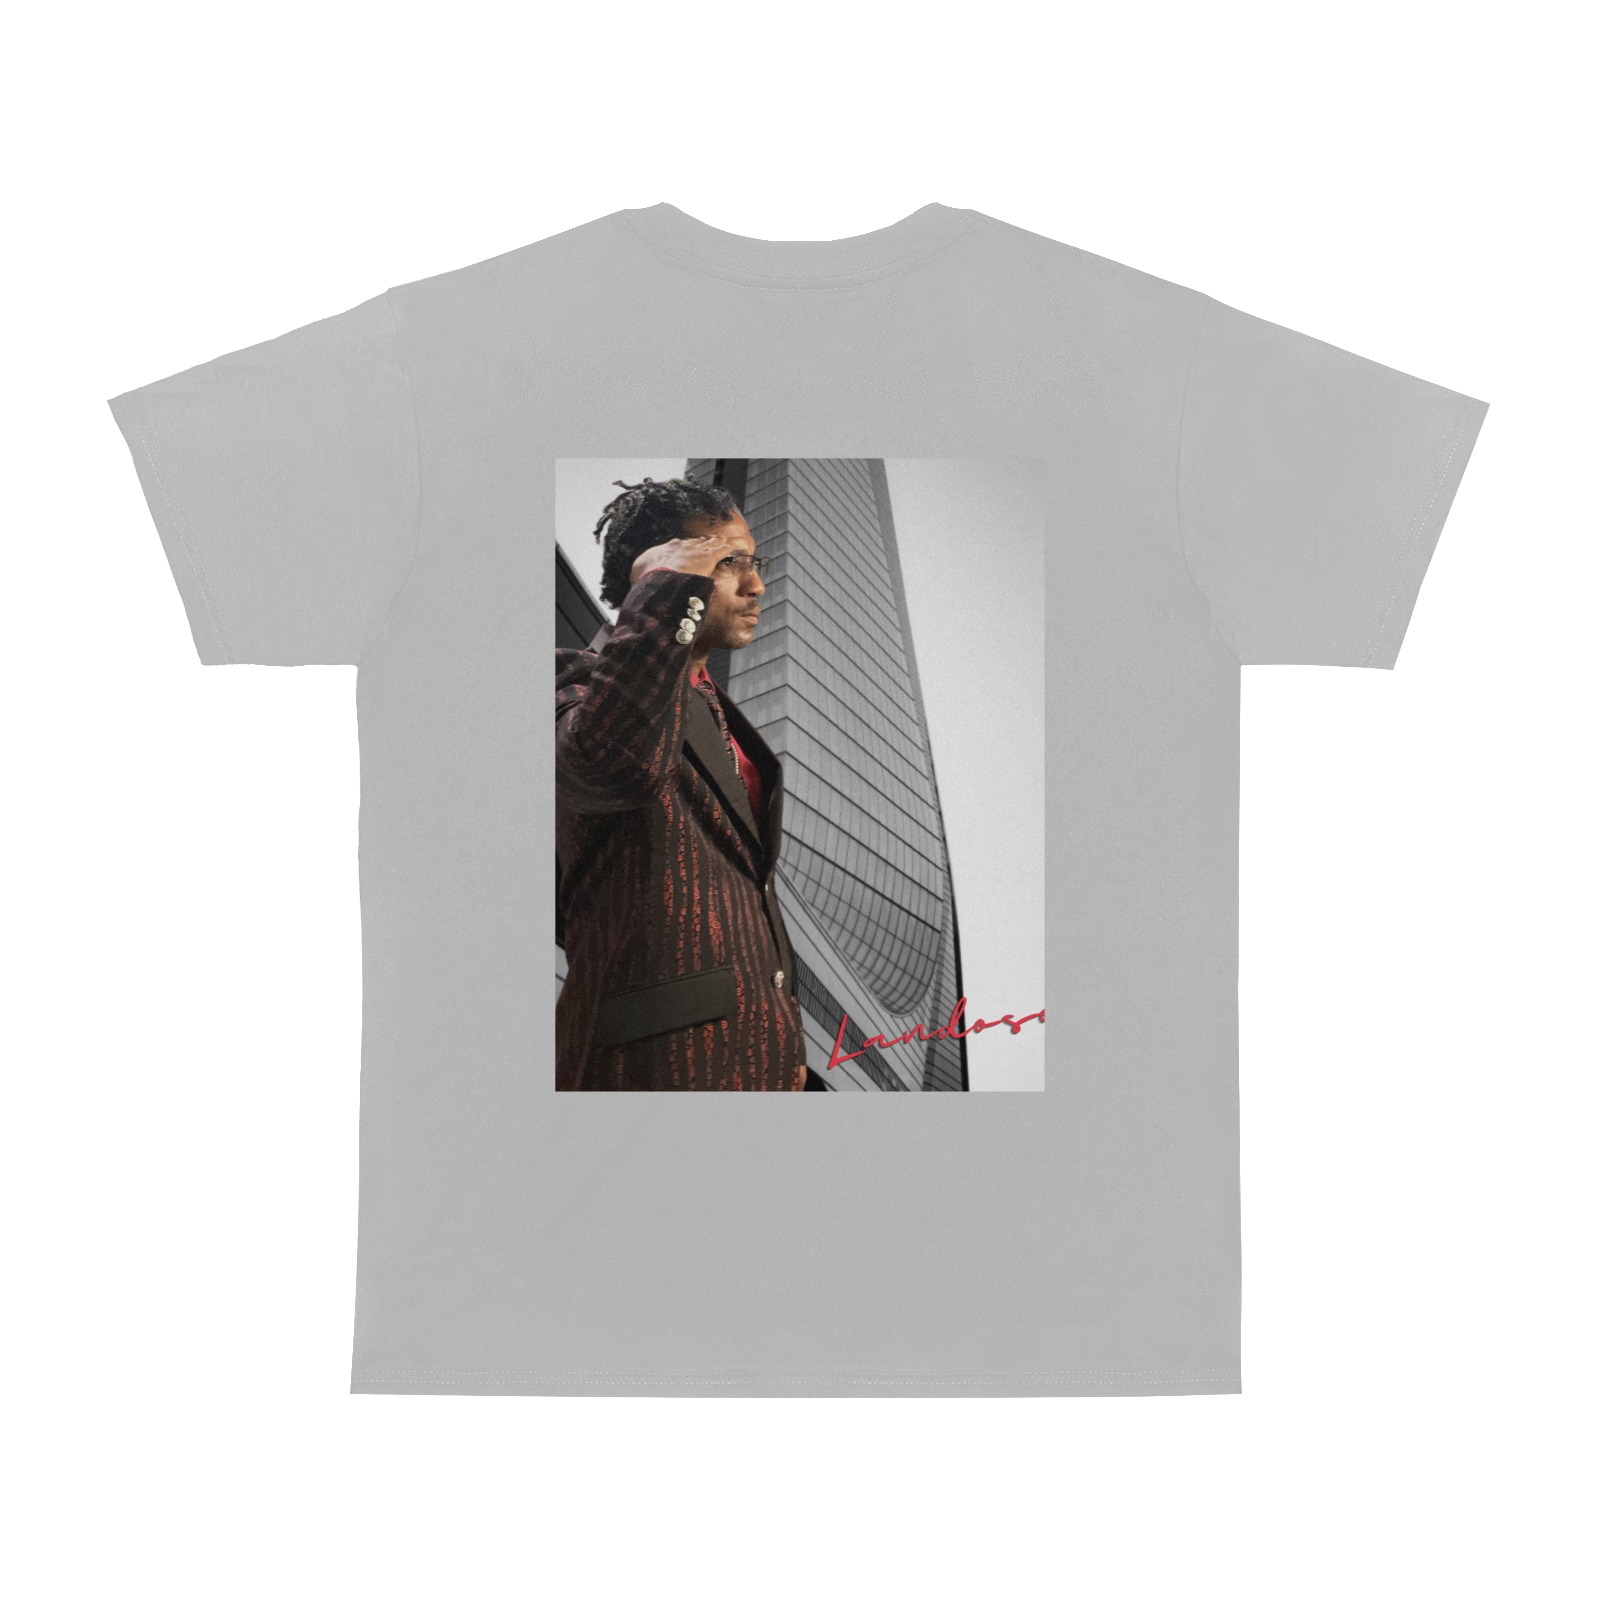 Landosous Men Grey/Black/Red Men T-Shirt Men's T-Shirt in USA Size (Two Sides Printing)